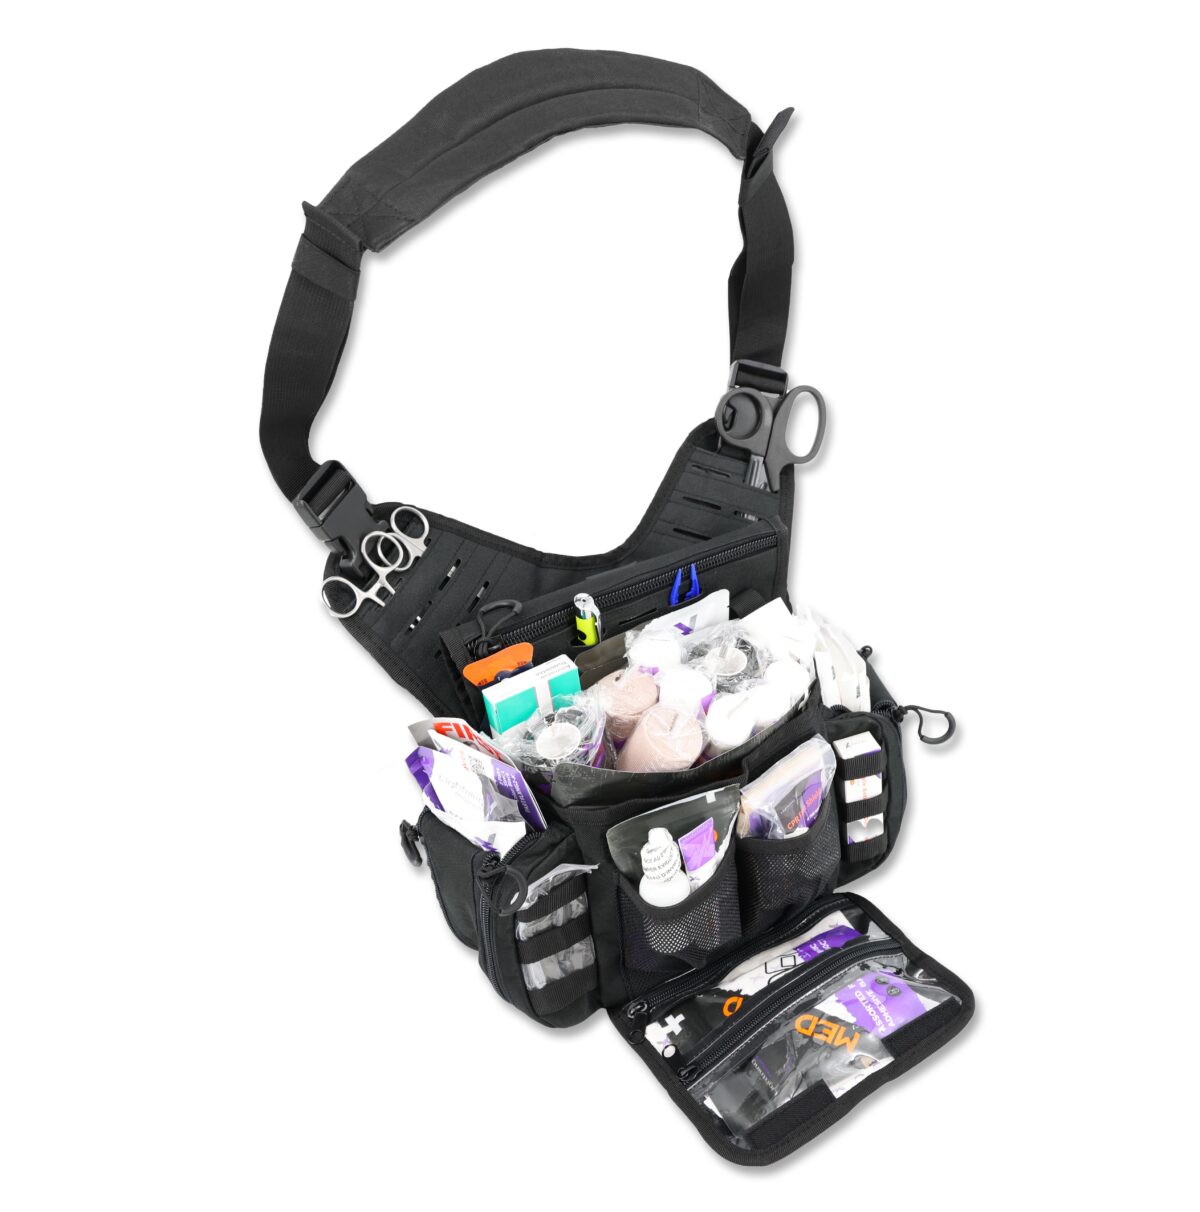 lightning x tactical medsling sling pack pre stocked first aid responder tacmed shoulder messenger bag mb15-ska black